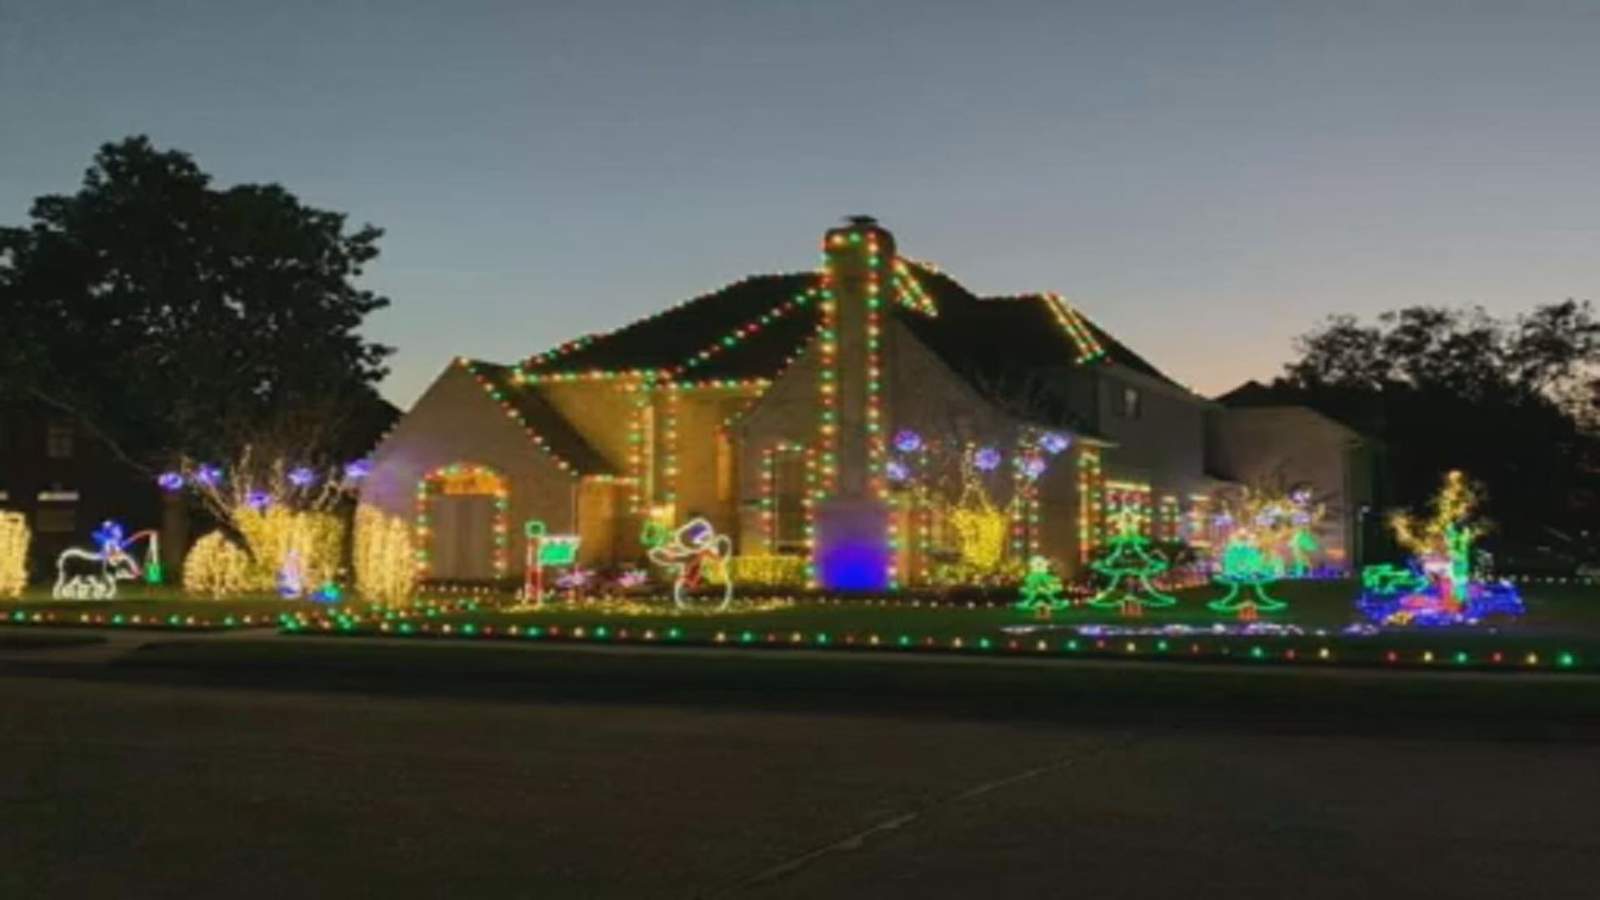 Thieves target elaborate Christmas lights display in Fort Bend County neighborhood